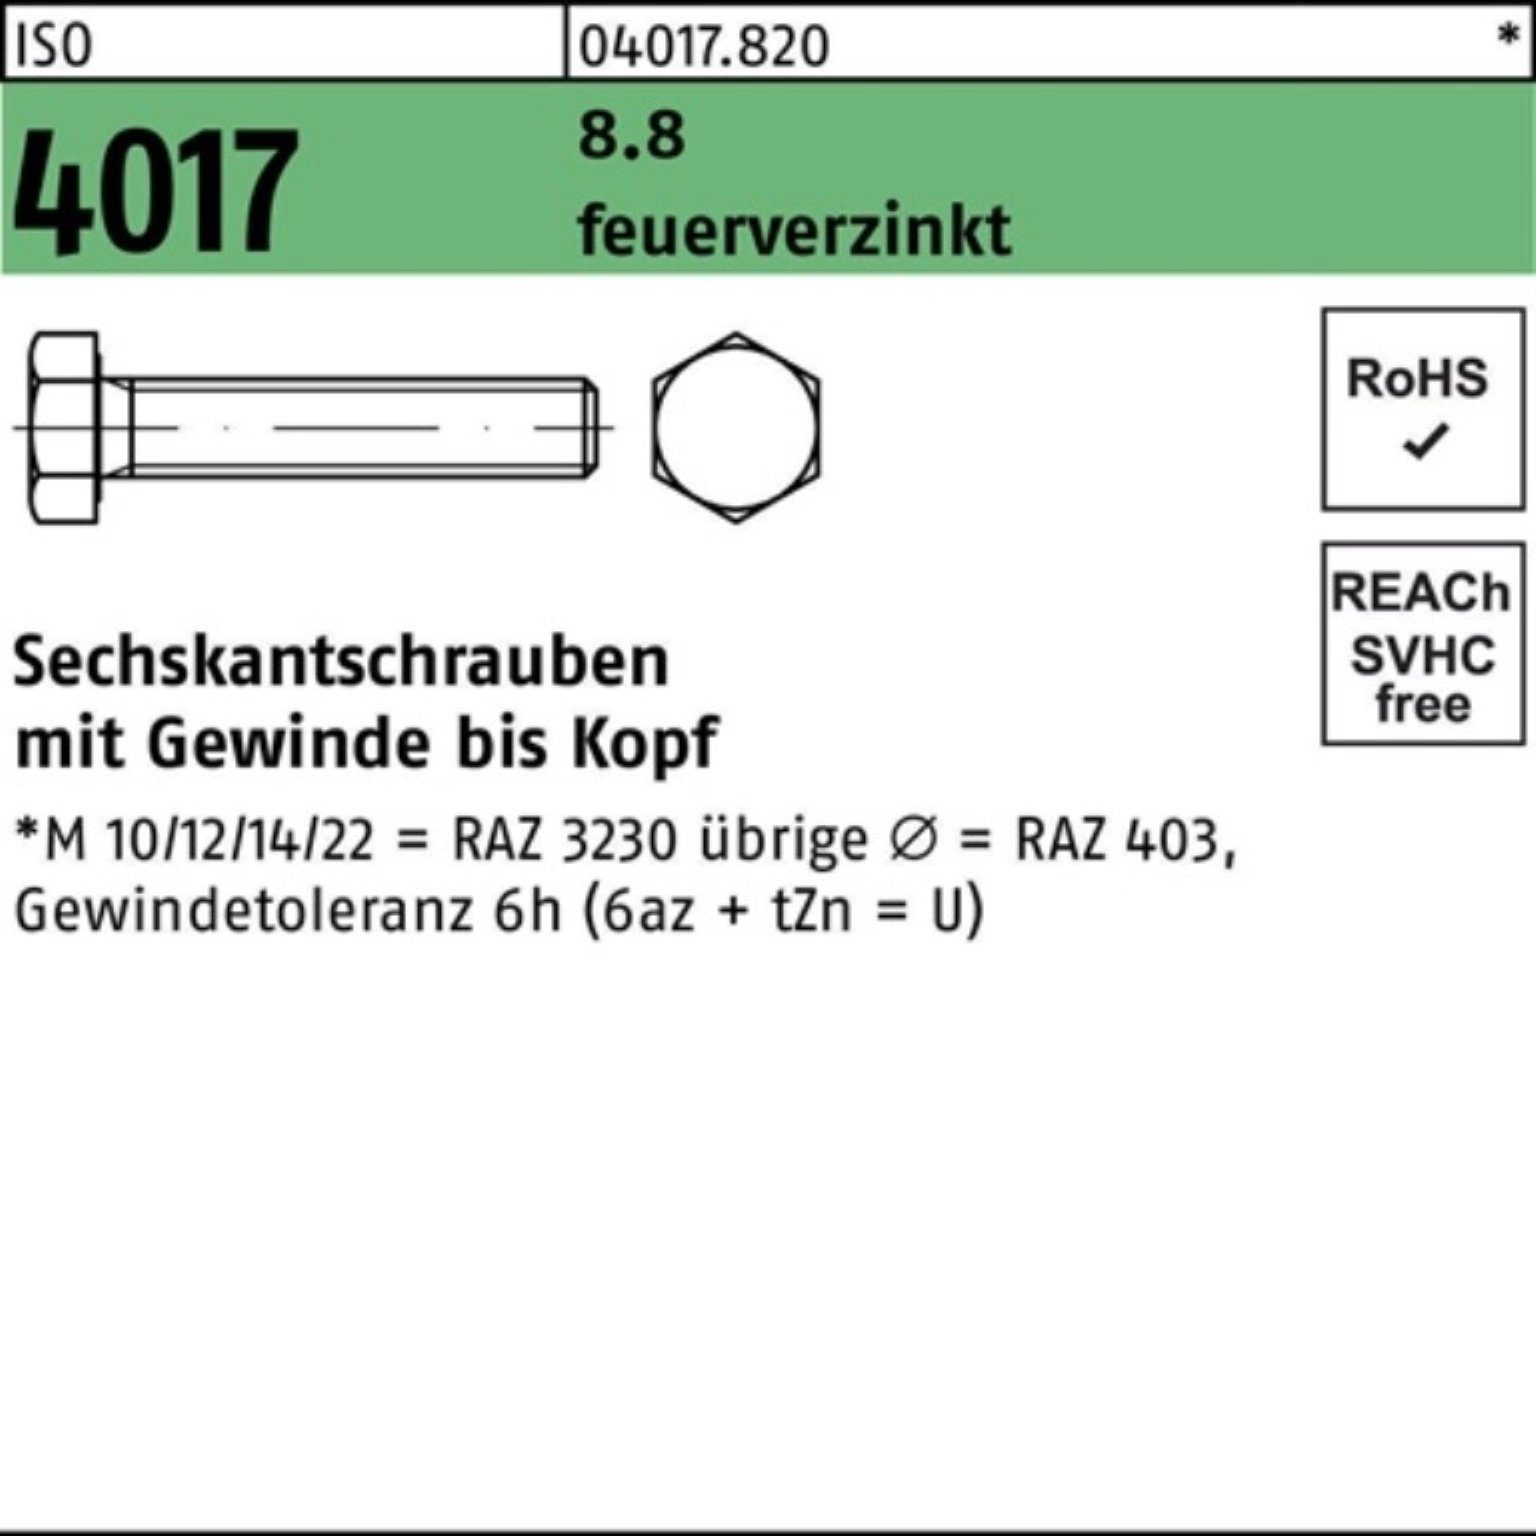 Bufab Sechskantschraube 100er Pack Sechskantschraube feuerverz. 8.8 ISO 4017 St 260 VG 1 M16x